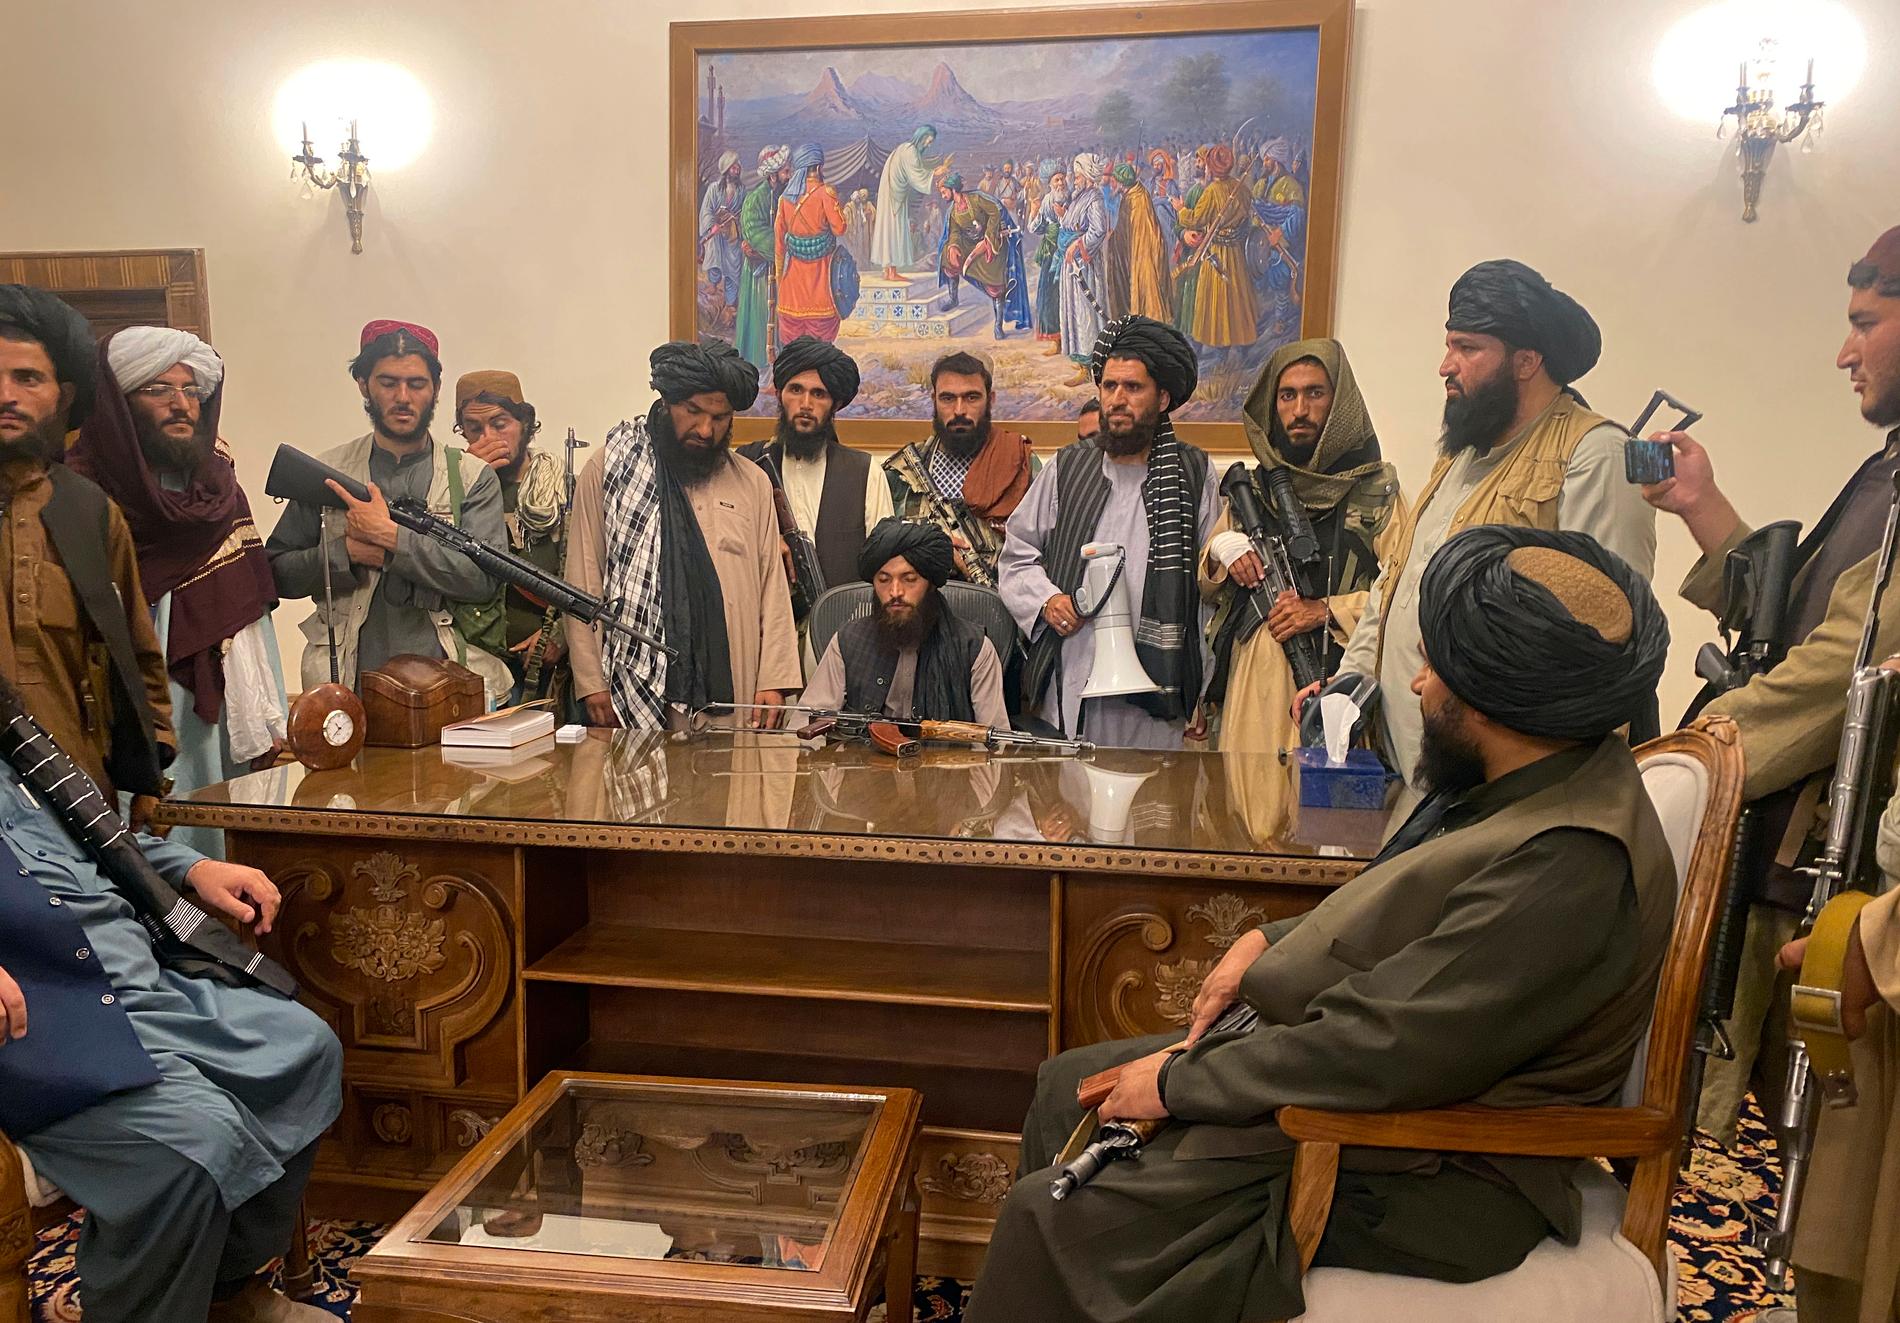 Talibanerna har tagit över presidentpalatset